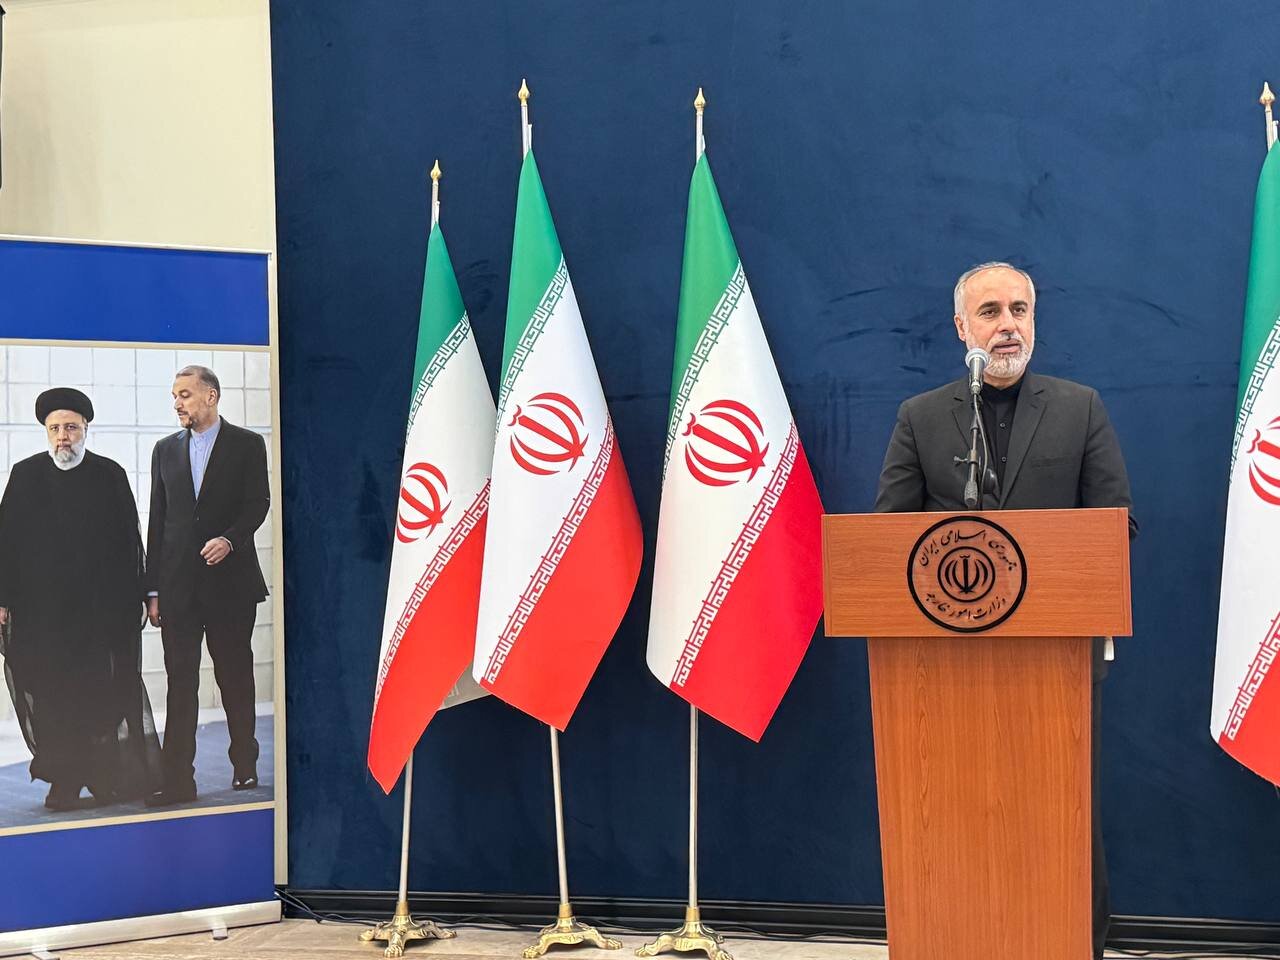 وزارة الخارجية الايرانية تتابع التطورات بشكل يومي ومستمر/أمریكا تنتهج سياسة عدائية ضدنا